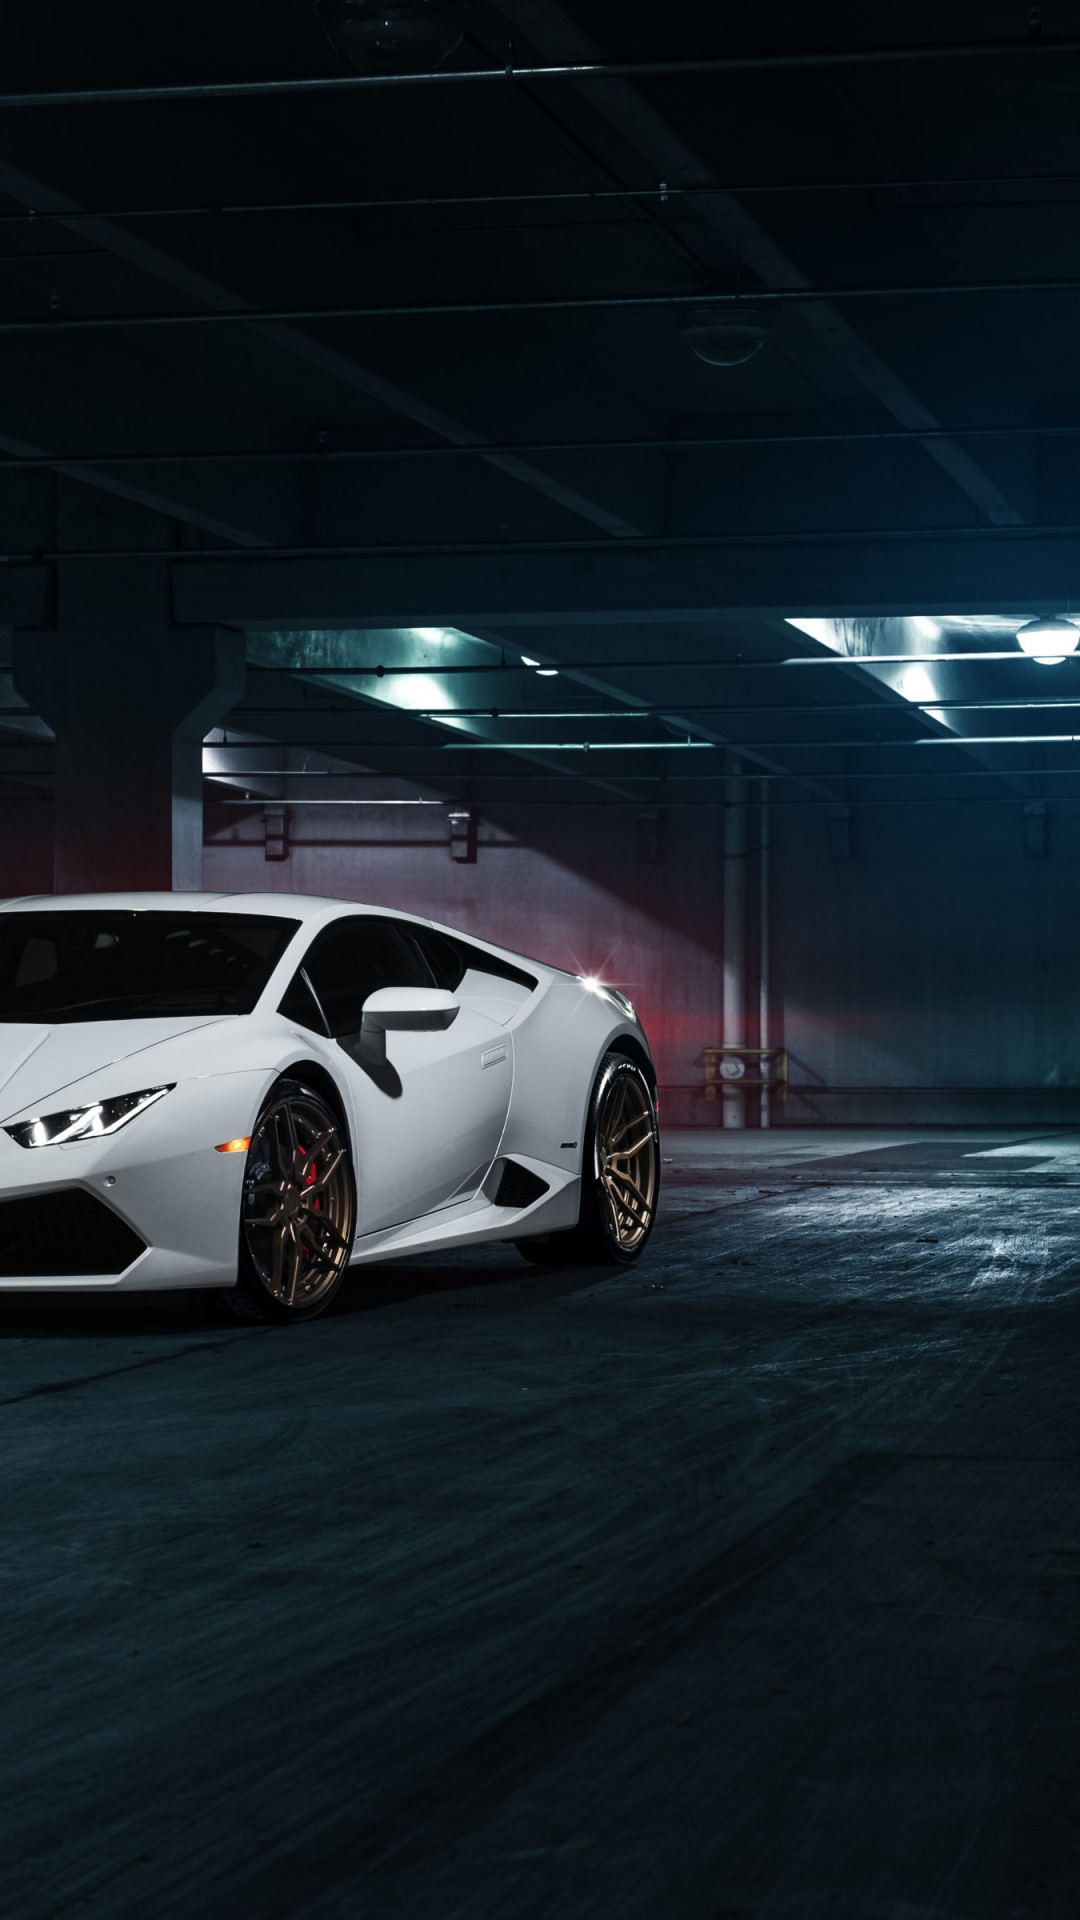 Download wallpaper: Lamborghini Huracan frontside 1080x1920